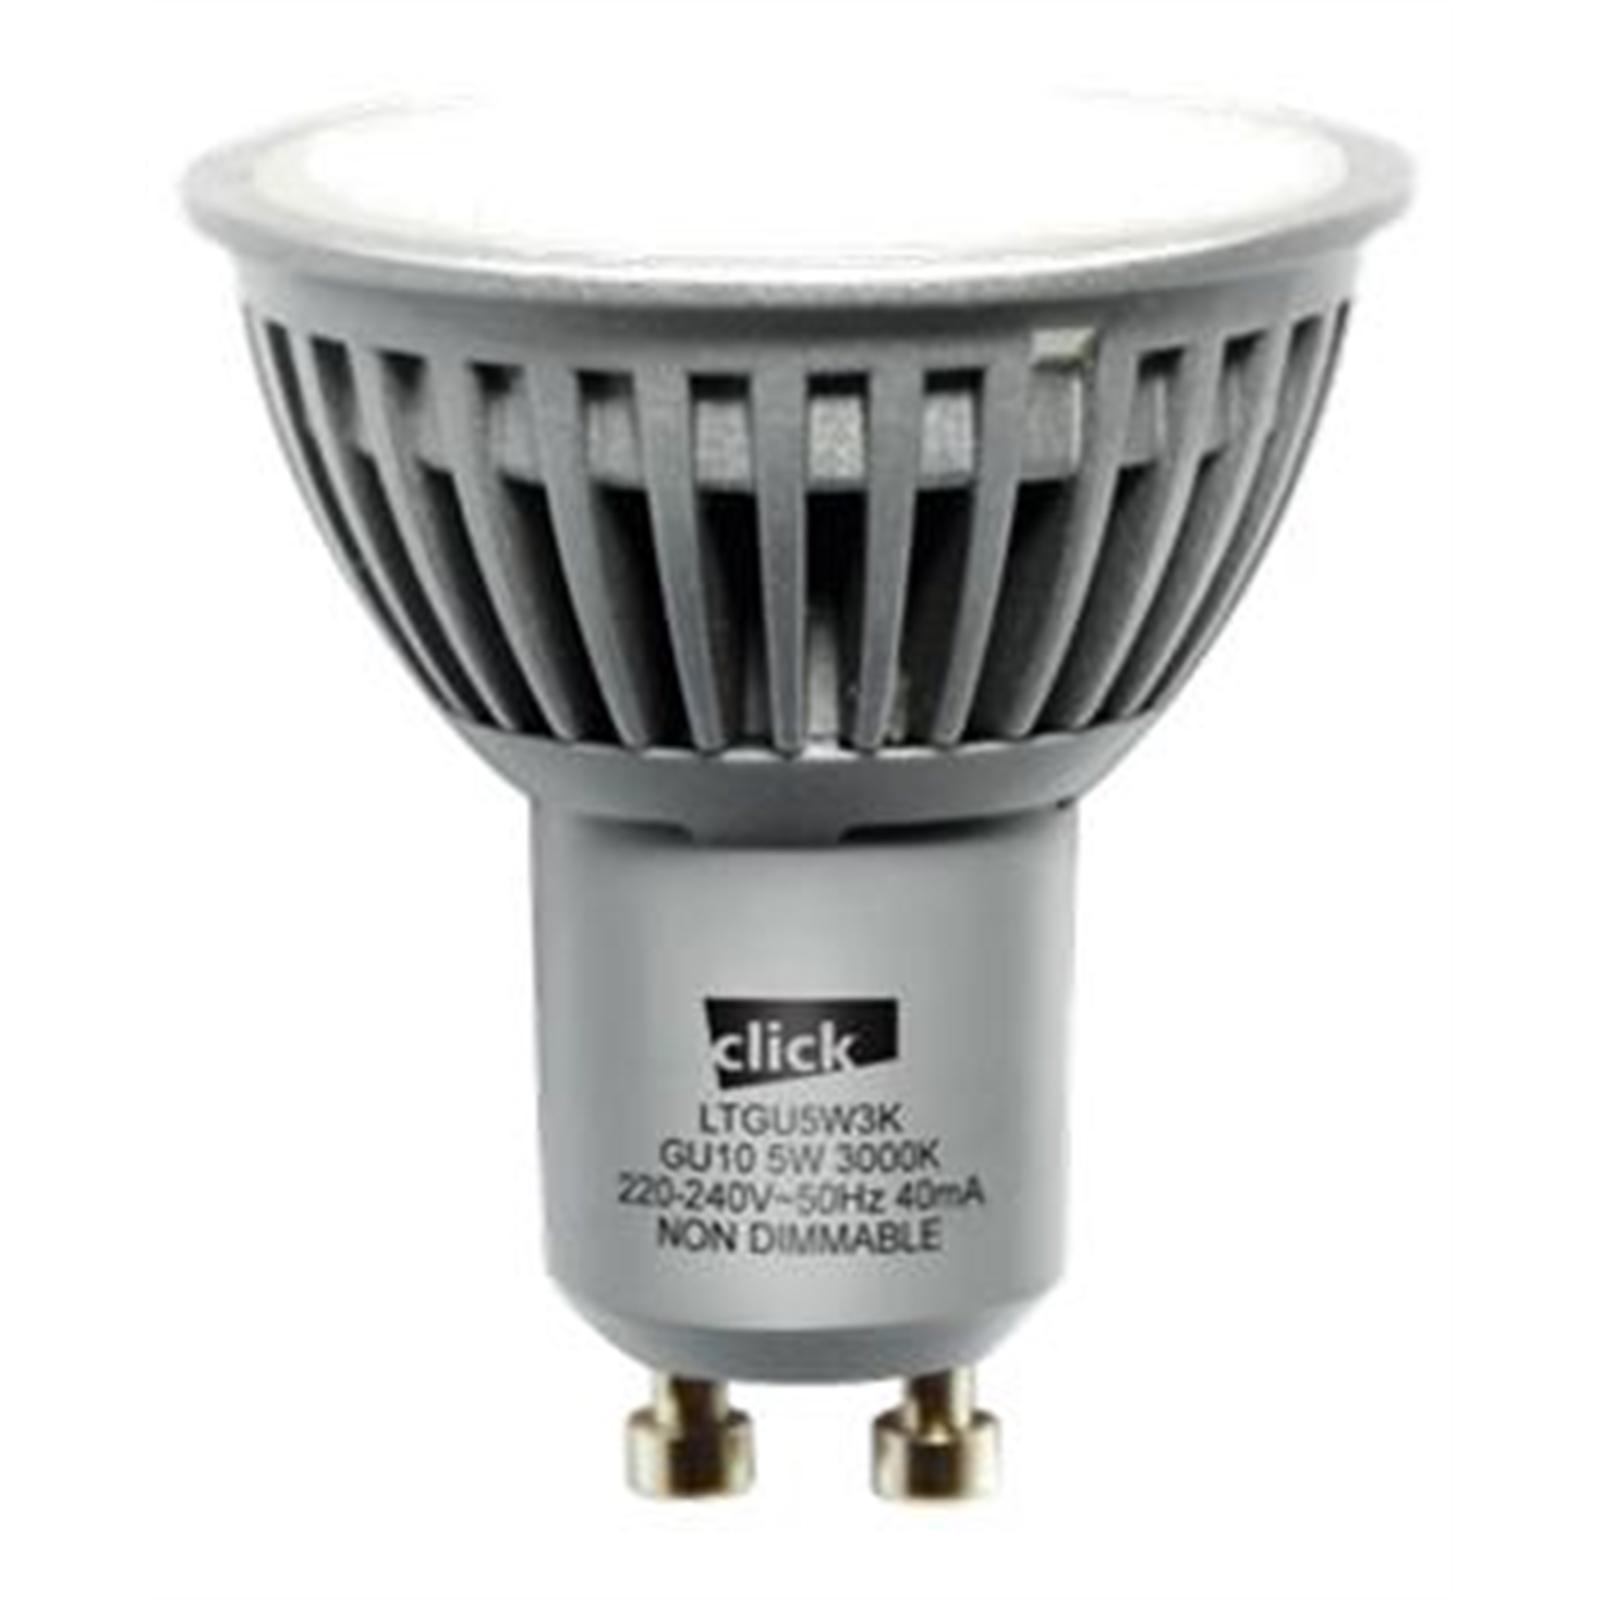 Click 5W GU10 LED Warm White Globes - 8 Pack